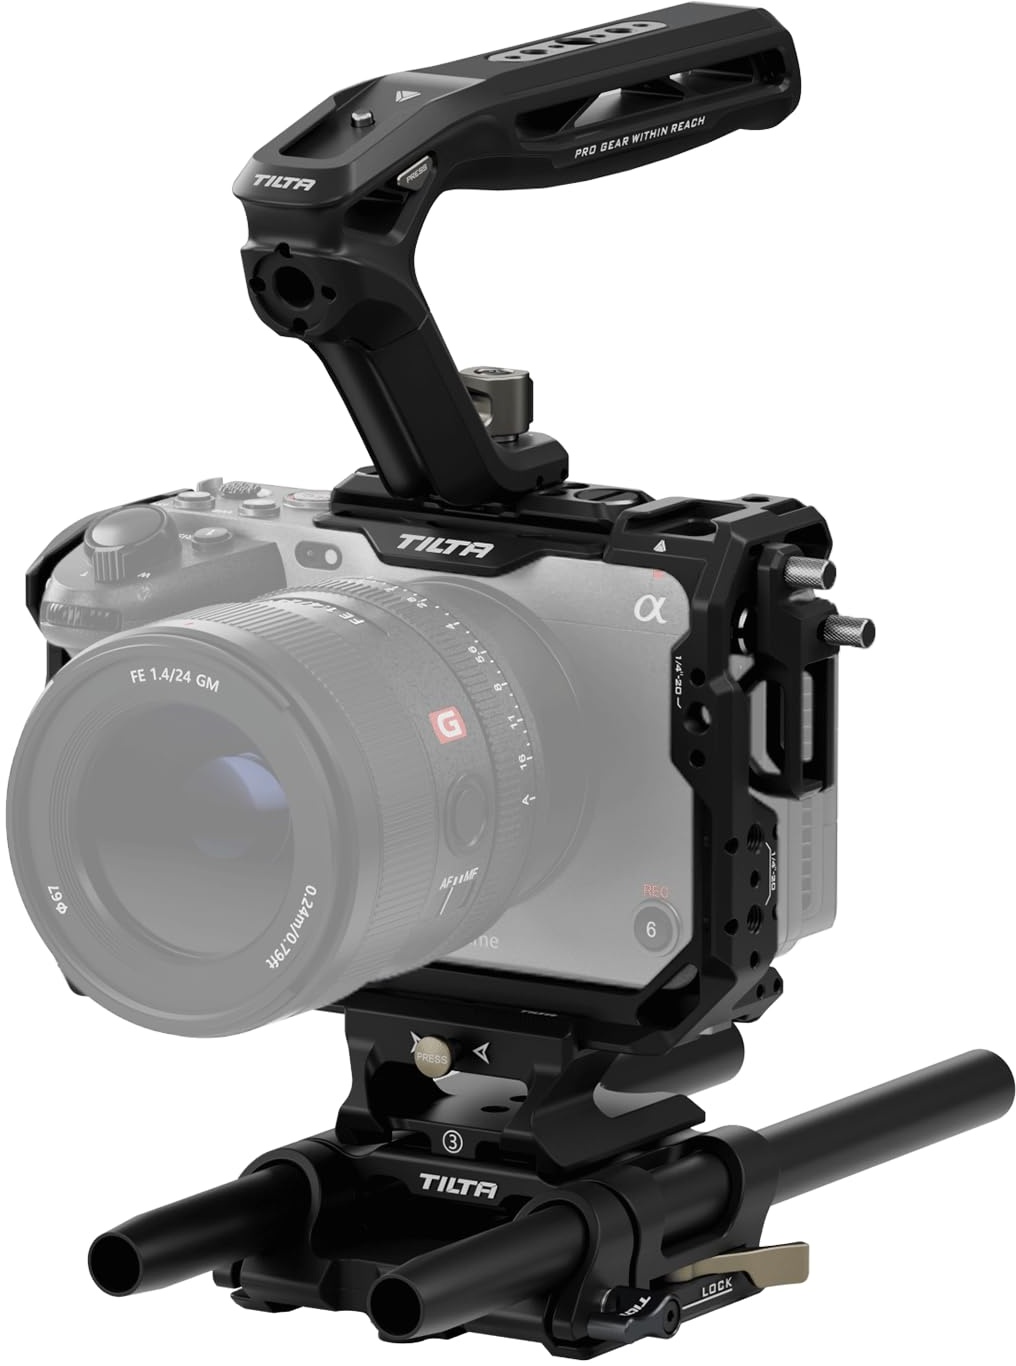 Tilta FX3 FX30 Cage, komplettes Kameragehäuse kompatibel mit Sony FX3/FX30 Basic Kit mit HDMI Kabelklemme, NATO Top Handle und 15mm LWS Baseplate - Schwarz TA-T16-A-B